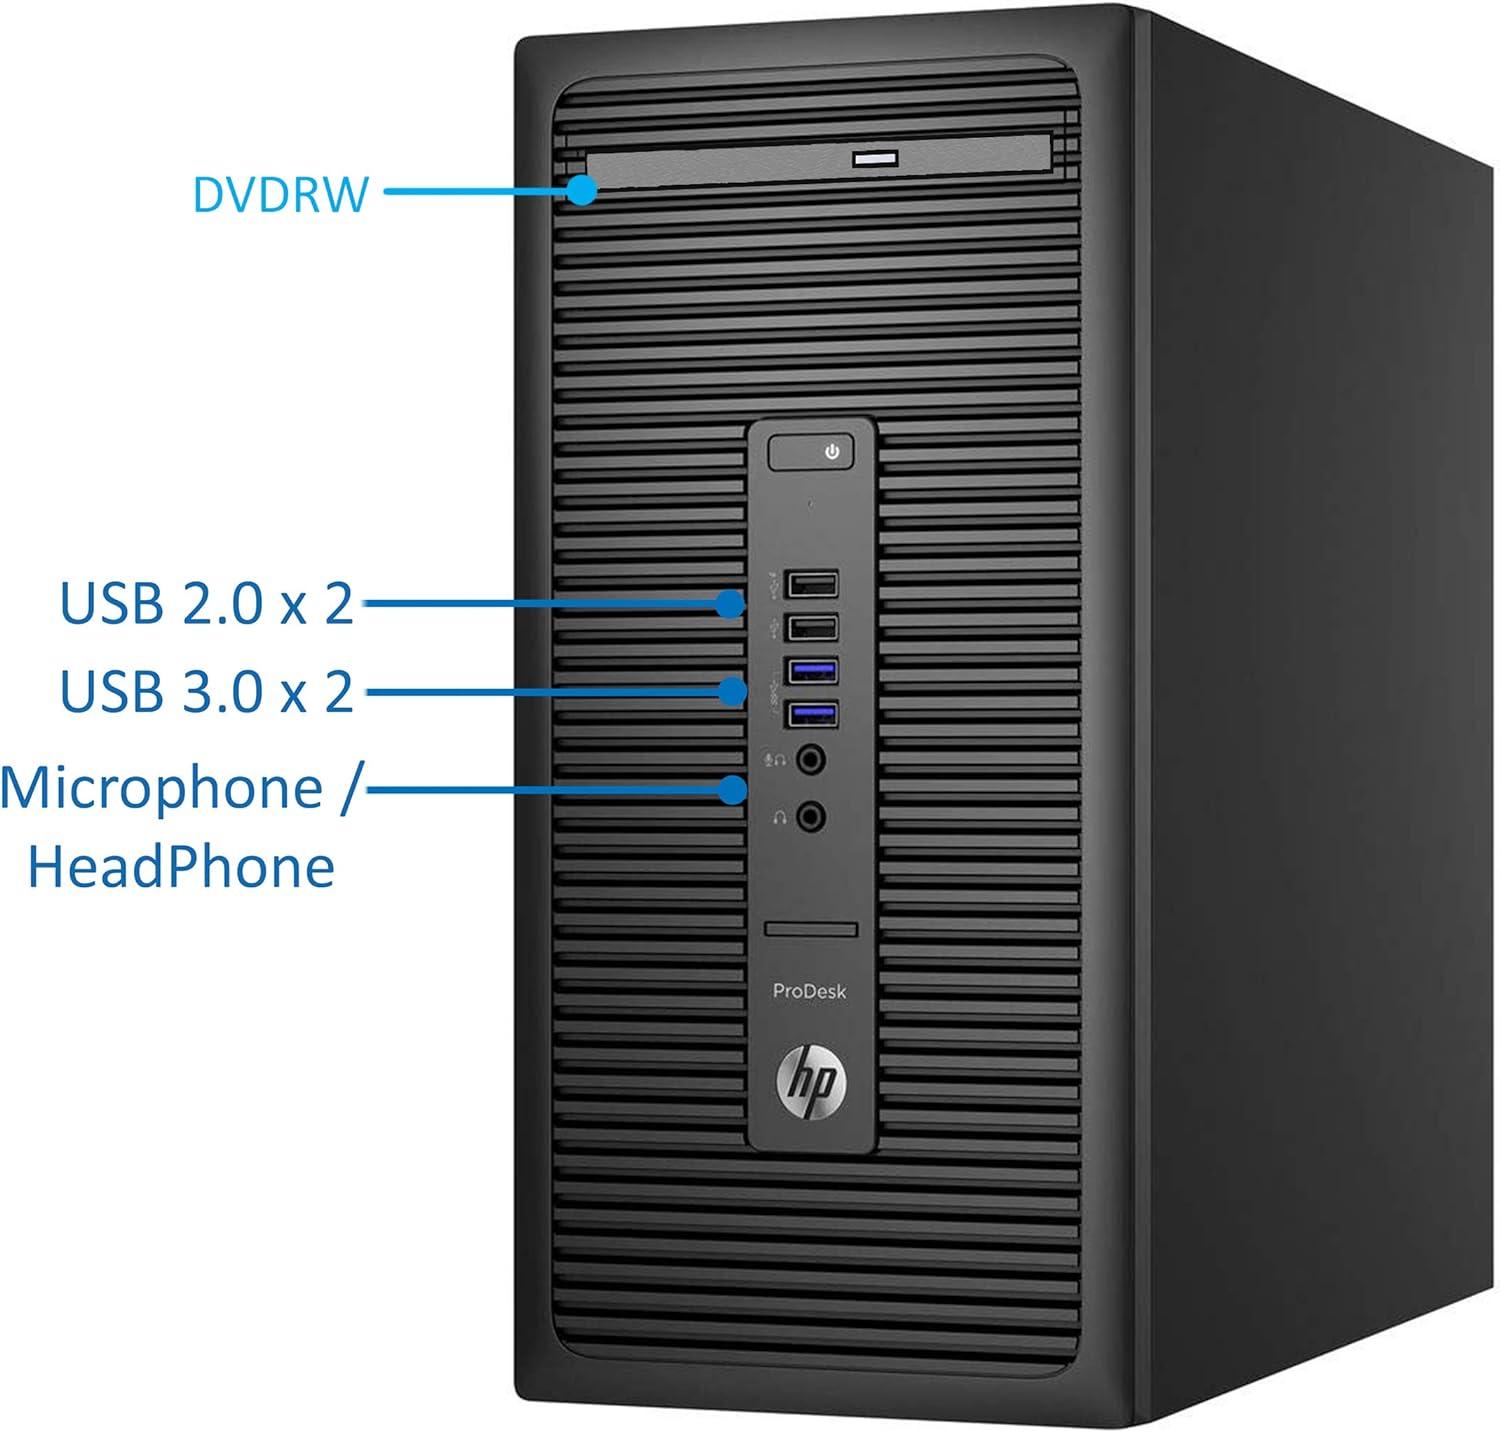 HP 600 G2 ProDesk Mini-Tower PC, Intel Quad-Core i7-6700 Upto 4.0GHz, 32GB RAM, 256GB SSD, AMD R7 240 2GB HD Graphics 4K, AC Wi-Fi, Bluetooth, HDMI, DisplayPort, Windows 10 Pro (Renewed)